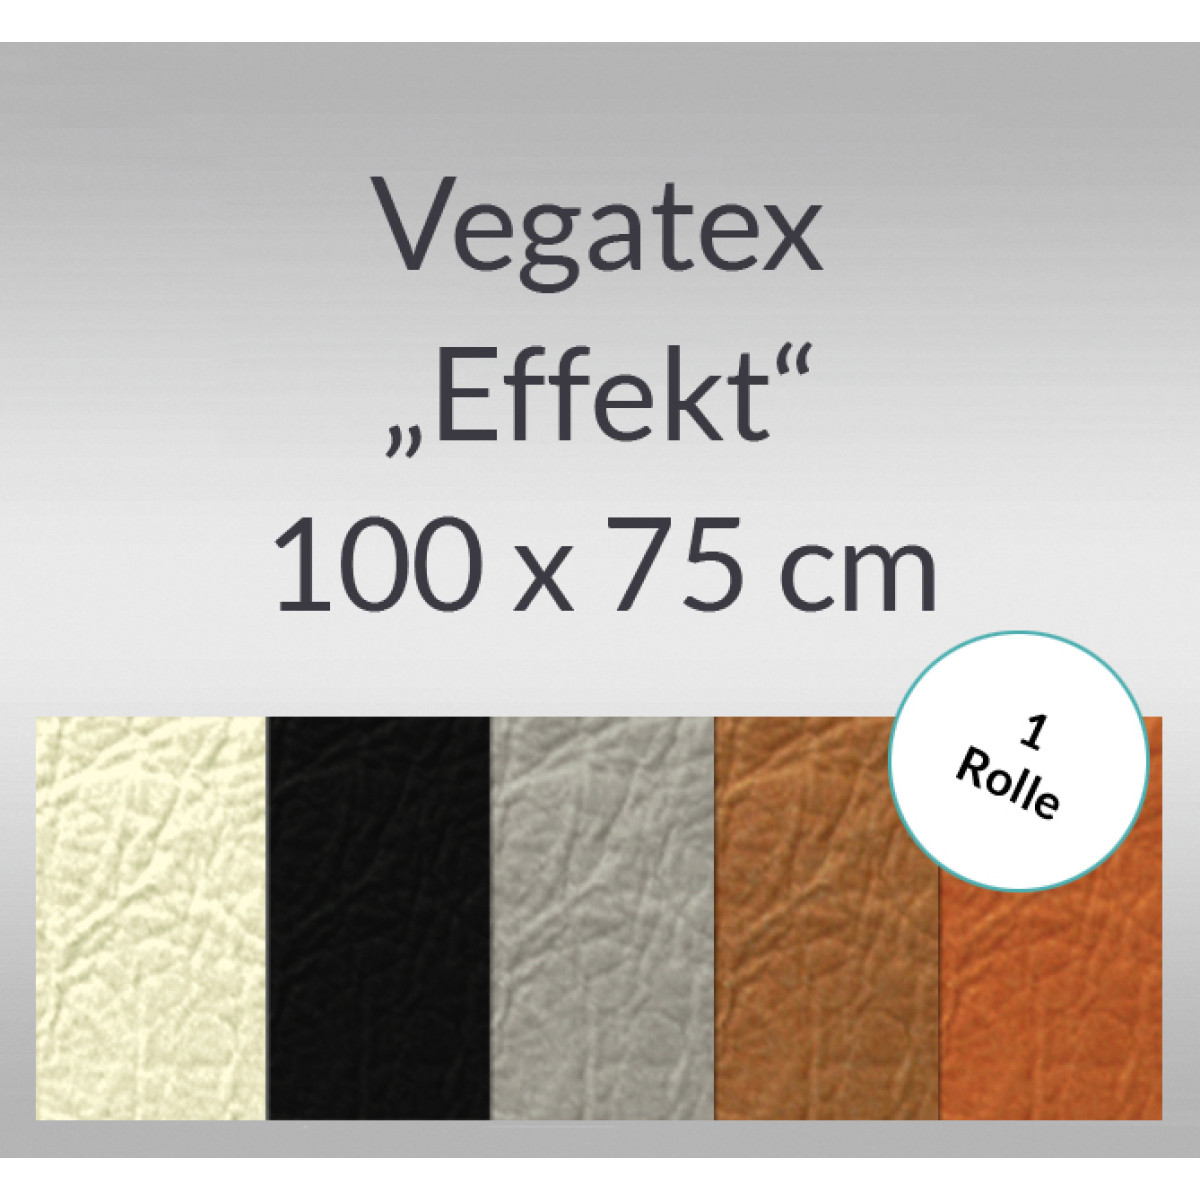 Vegatex "Effekt" 100 x 75 cm - 1 Rolle